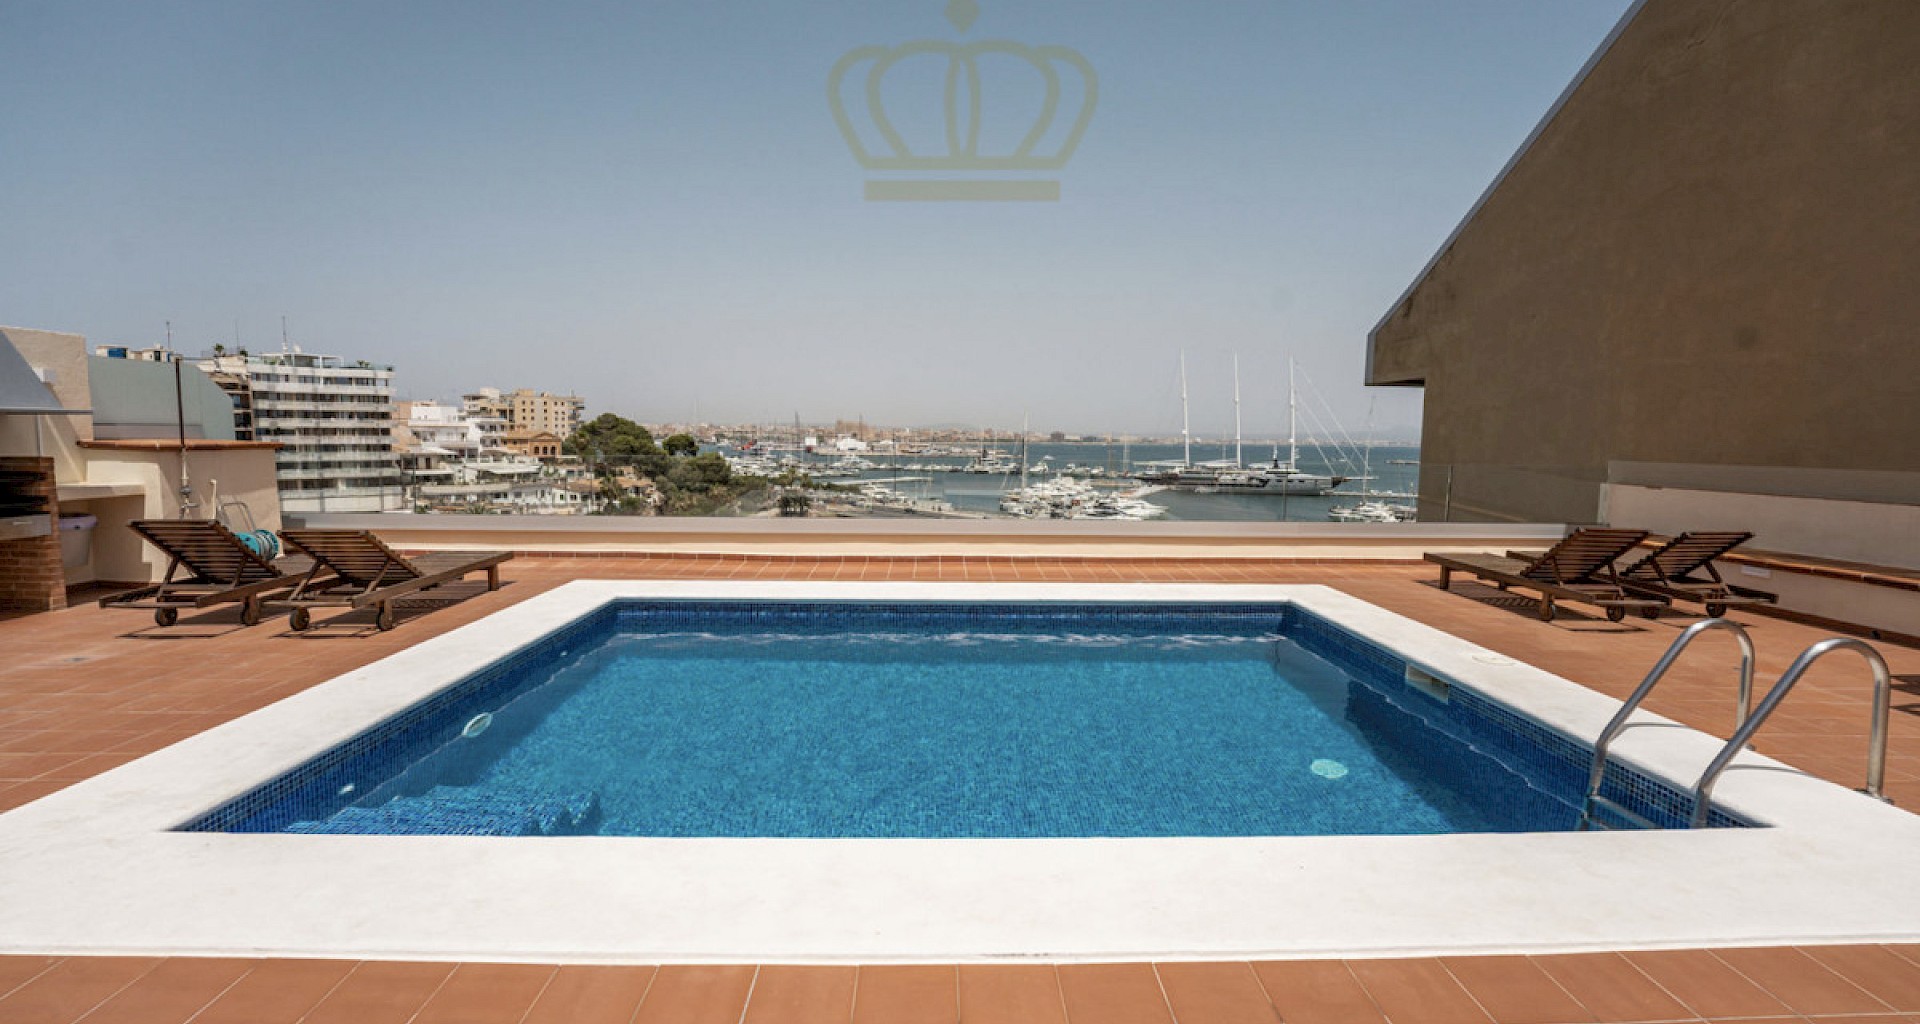 KROHN & LUEDEMANN Grußzügiges Apartment mit tollem Blick über den Hafen von Palma 